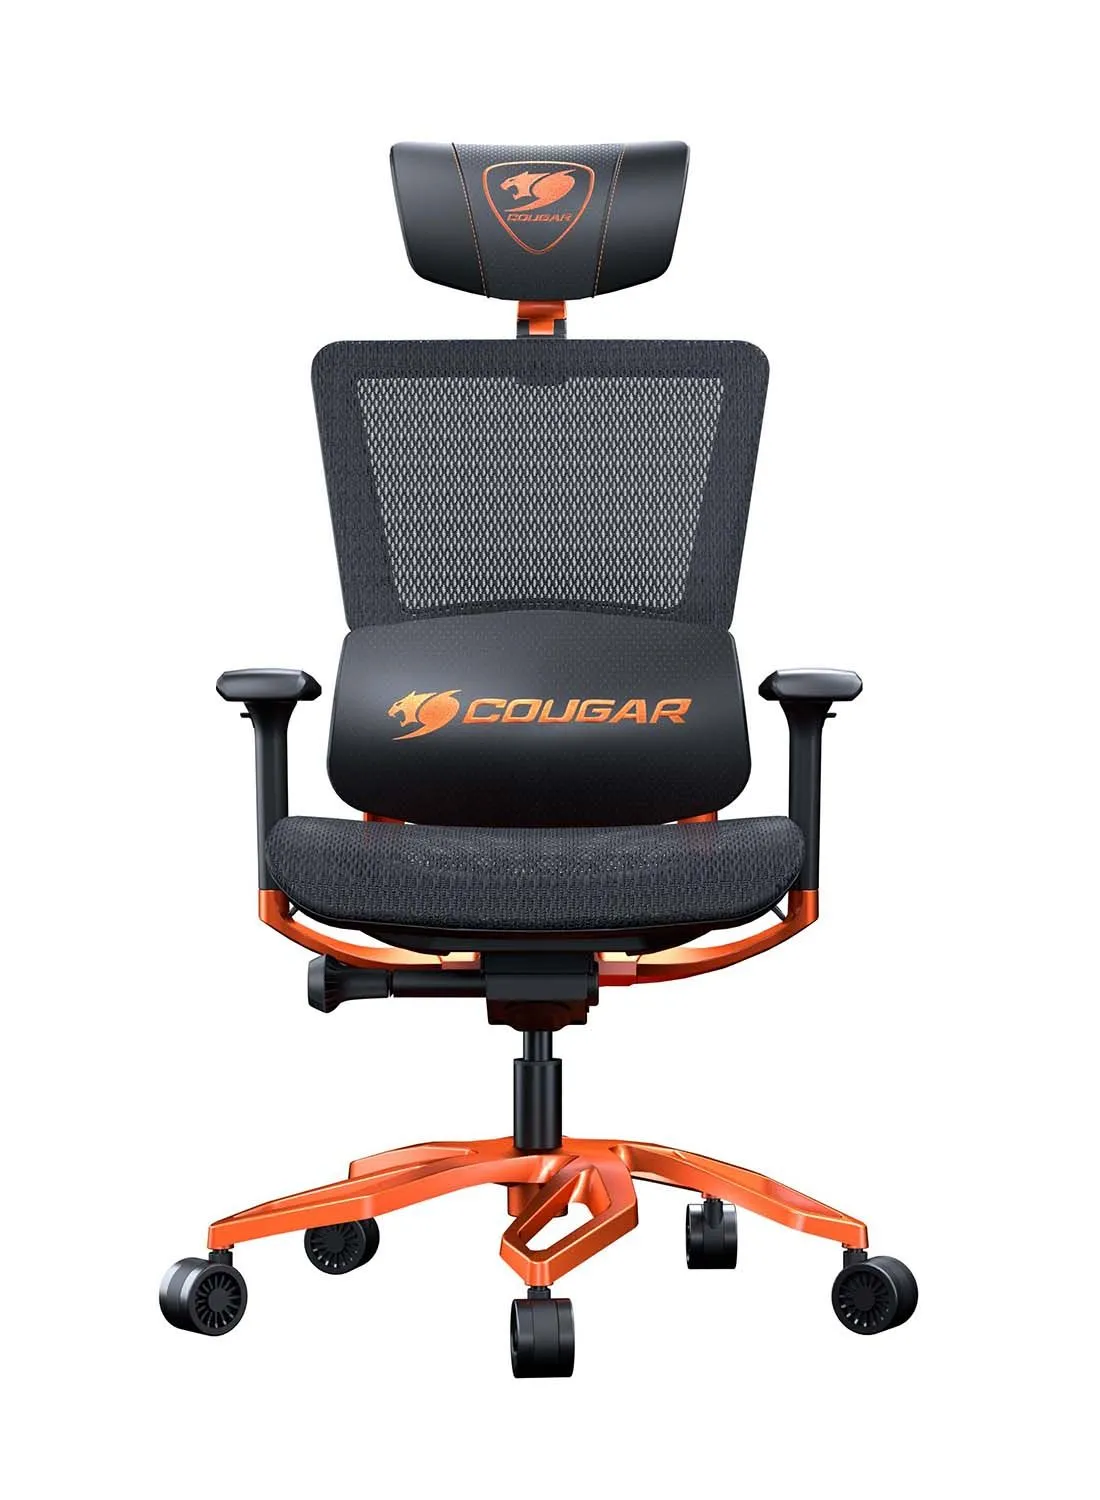 كرسي الألعاب كوجار المريح Argo بهيكل فولاذي ونظام التحكم في الأسلاك المتحرك باللون البرتقالي